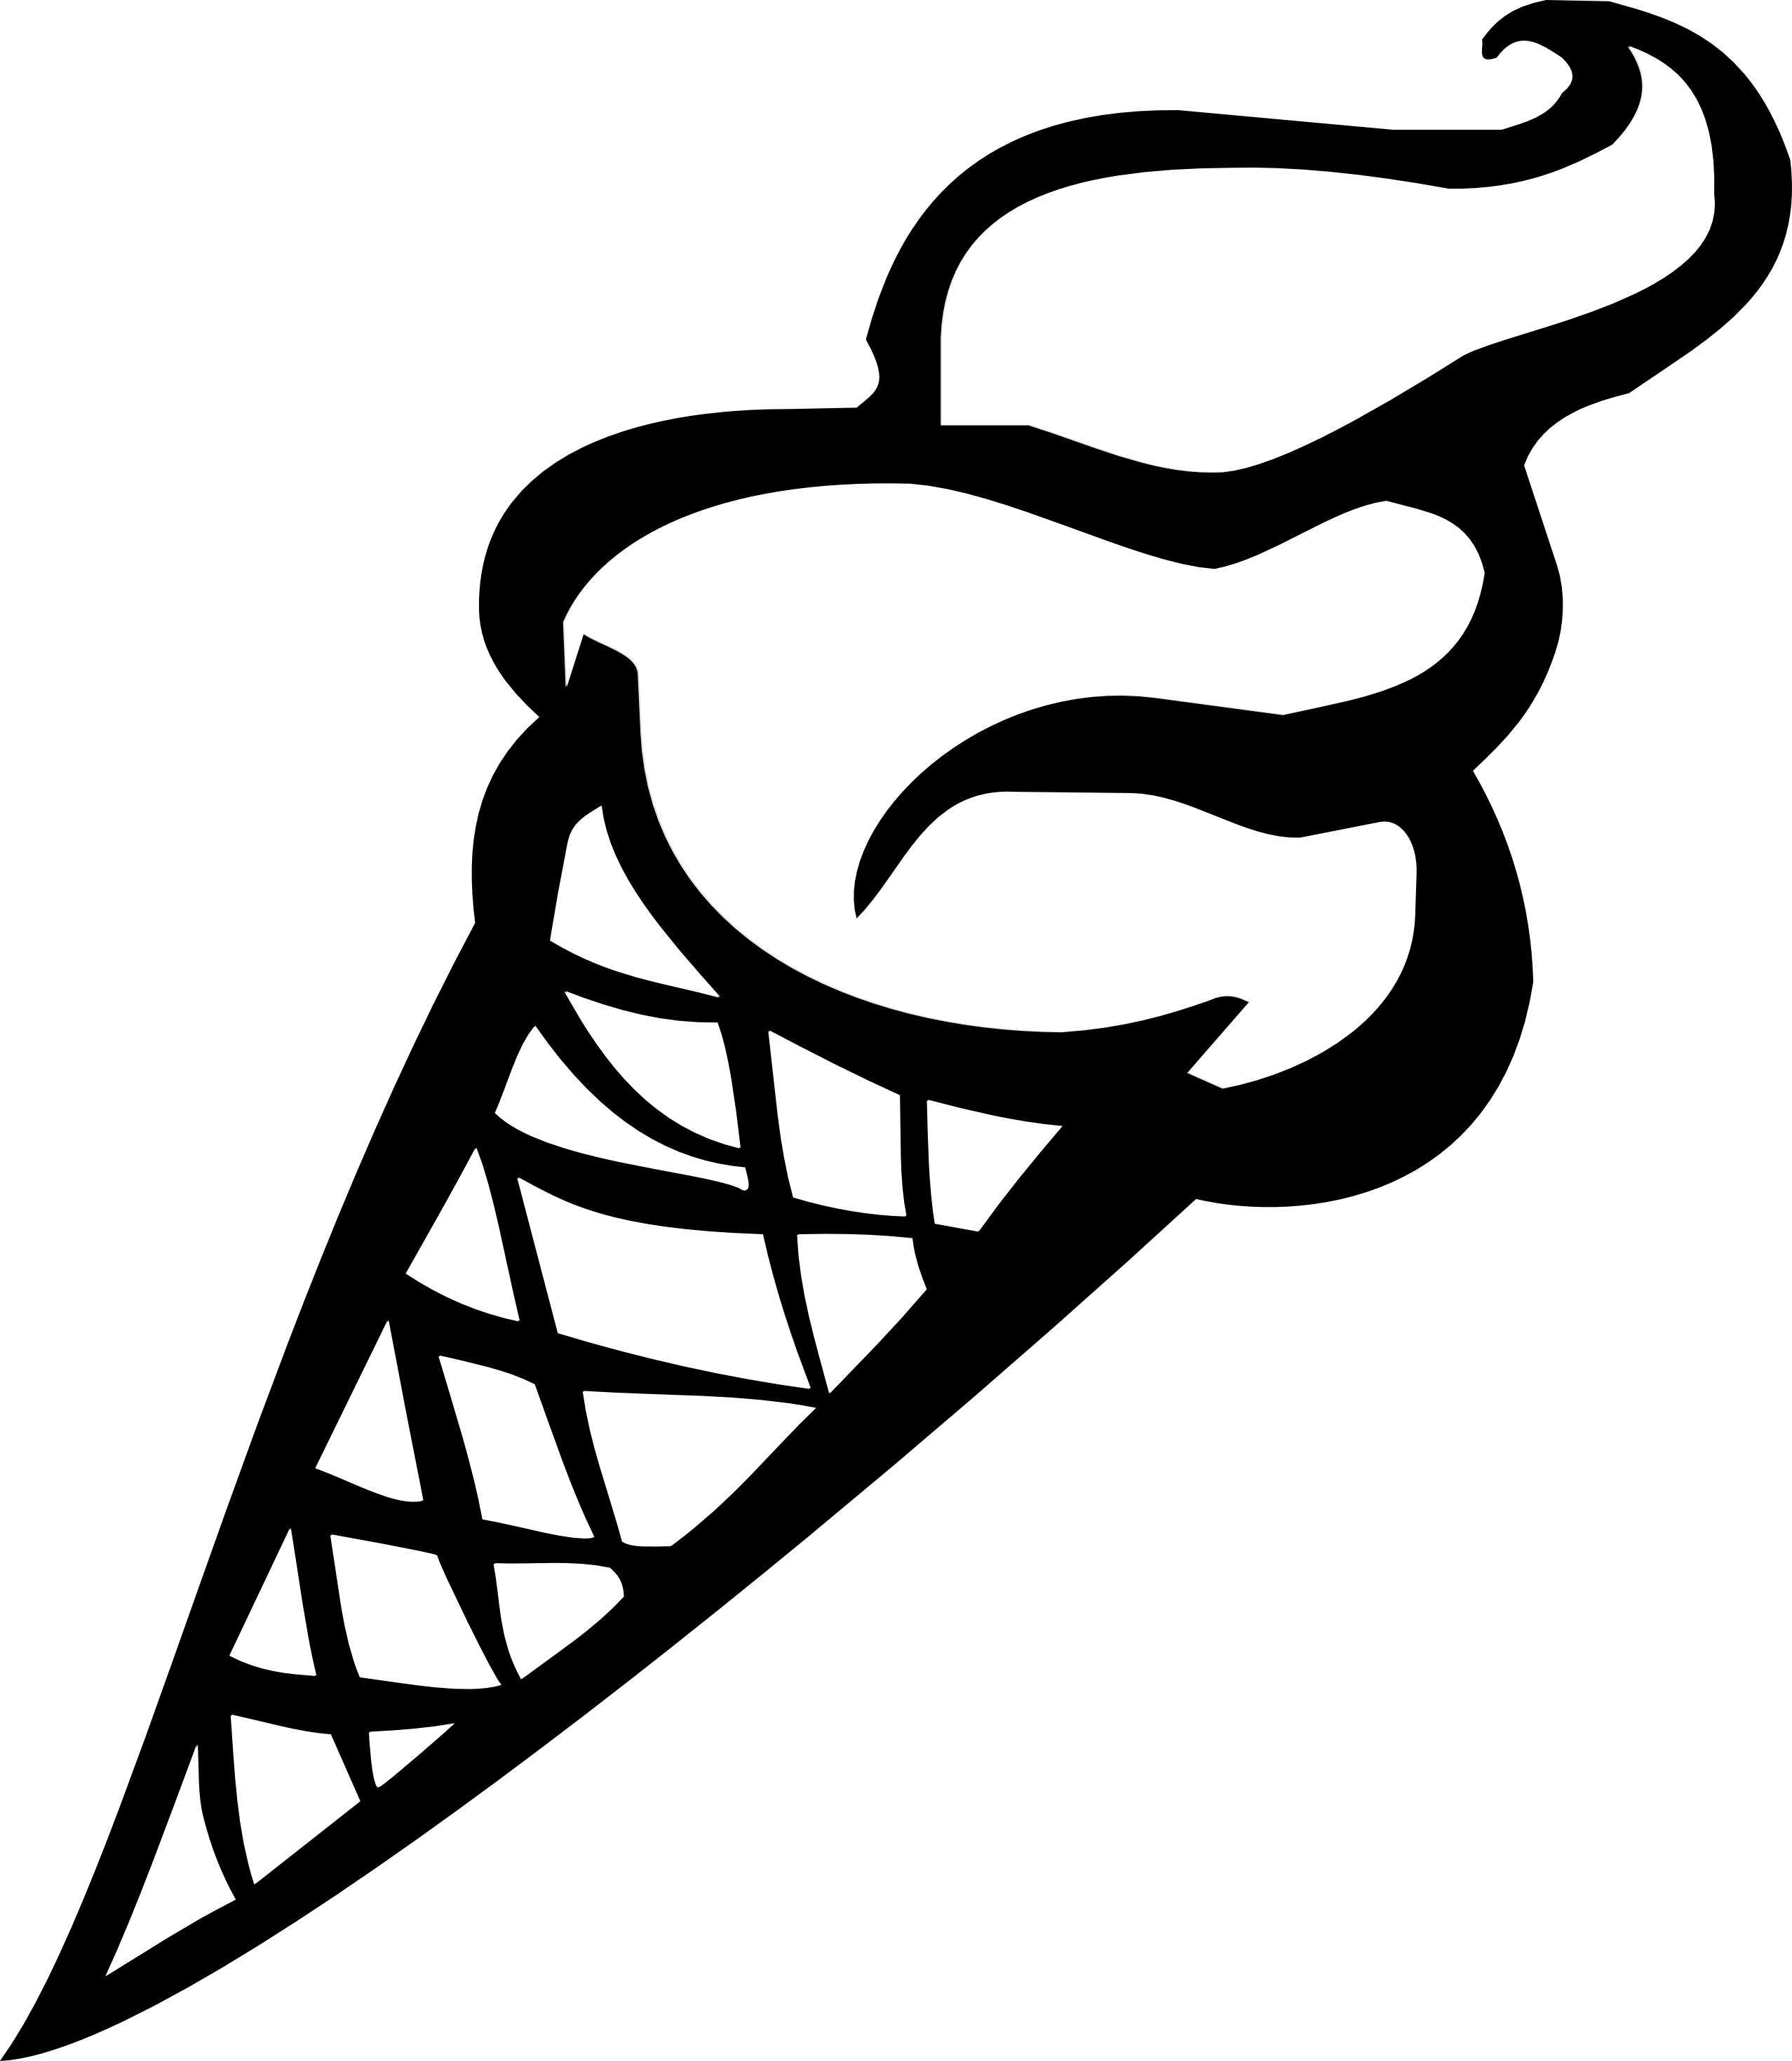 Ice cream sundae image of ice cream cone clipart 7 sundae